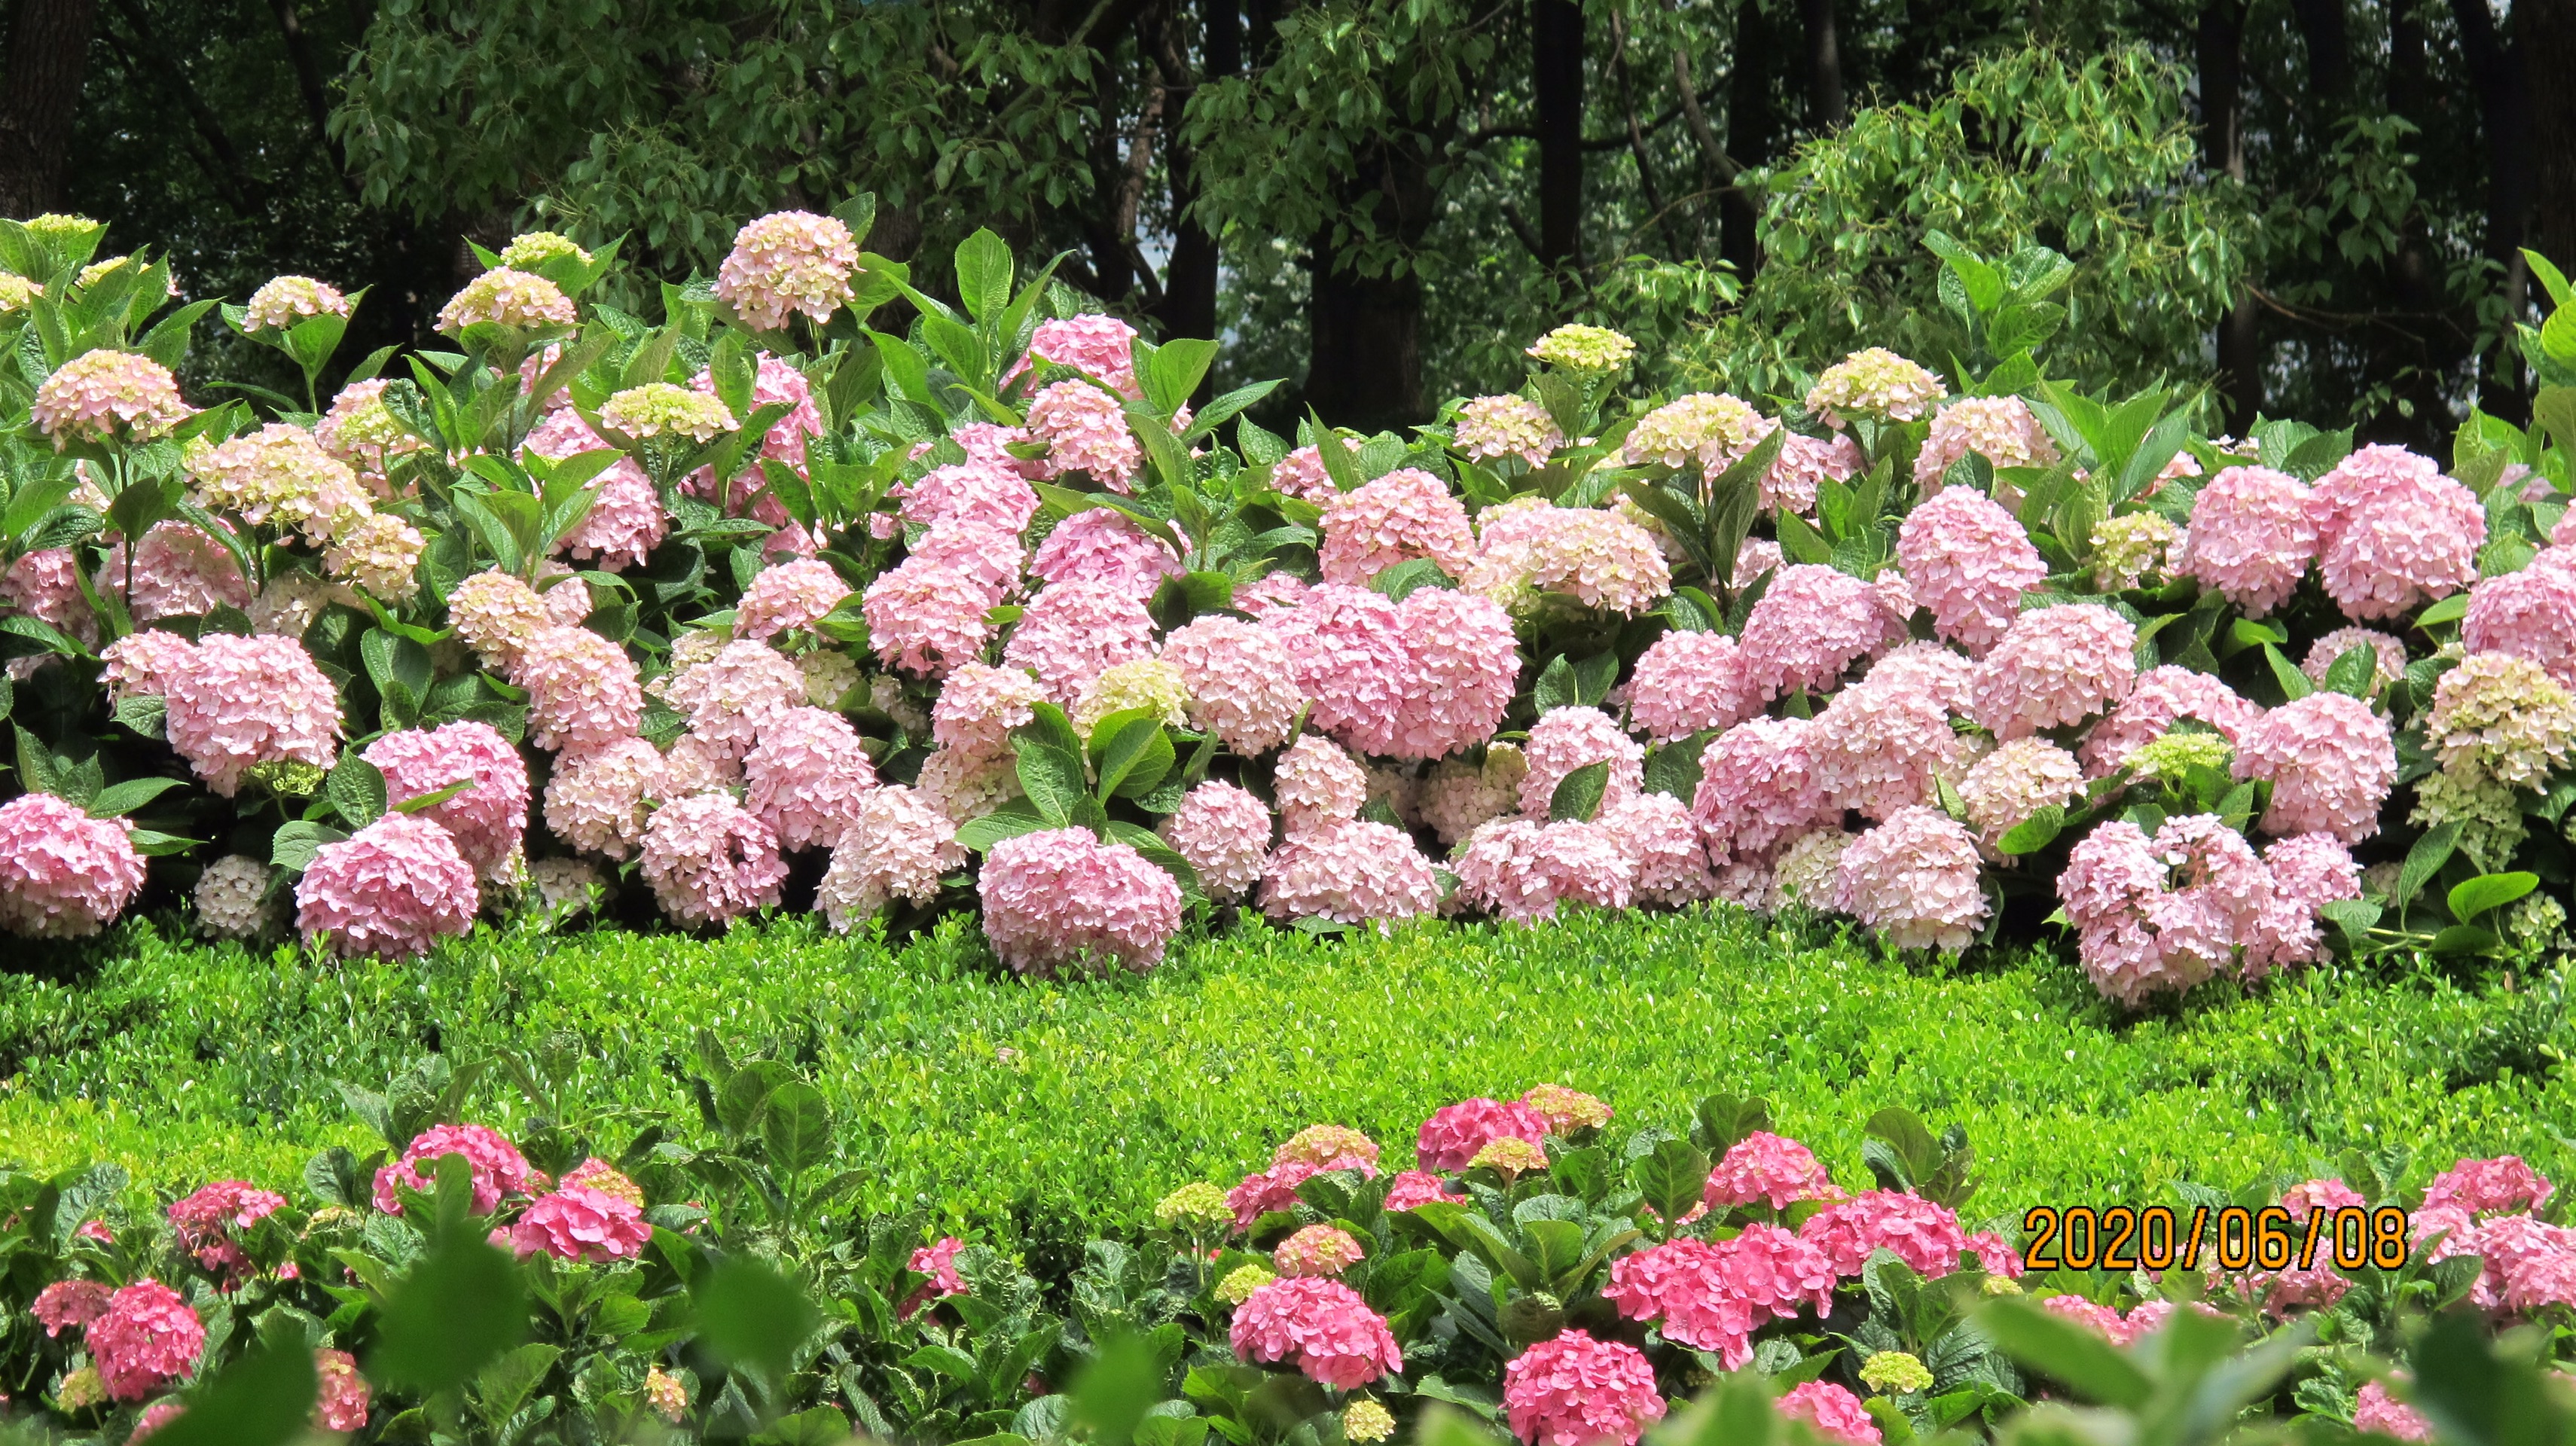 不用去镰仓家门口的绣球花也可以这么好看-上海世纪公园